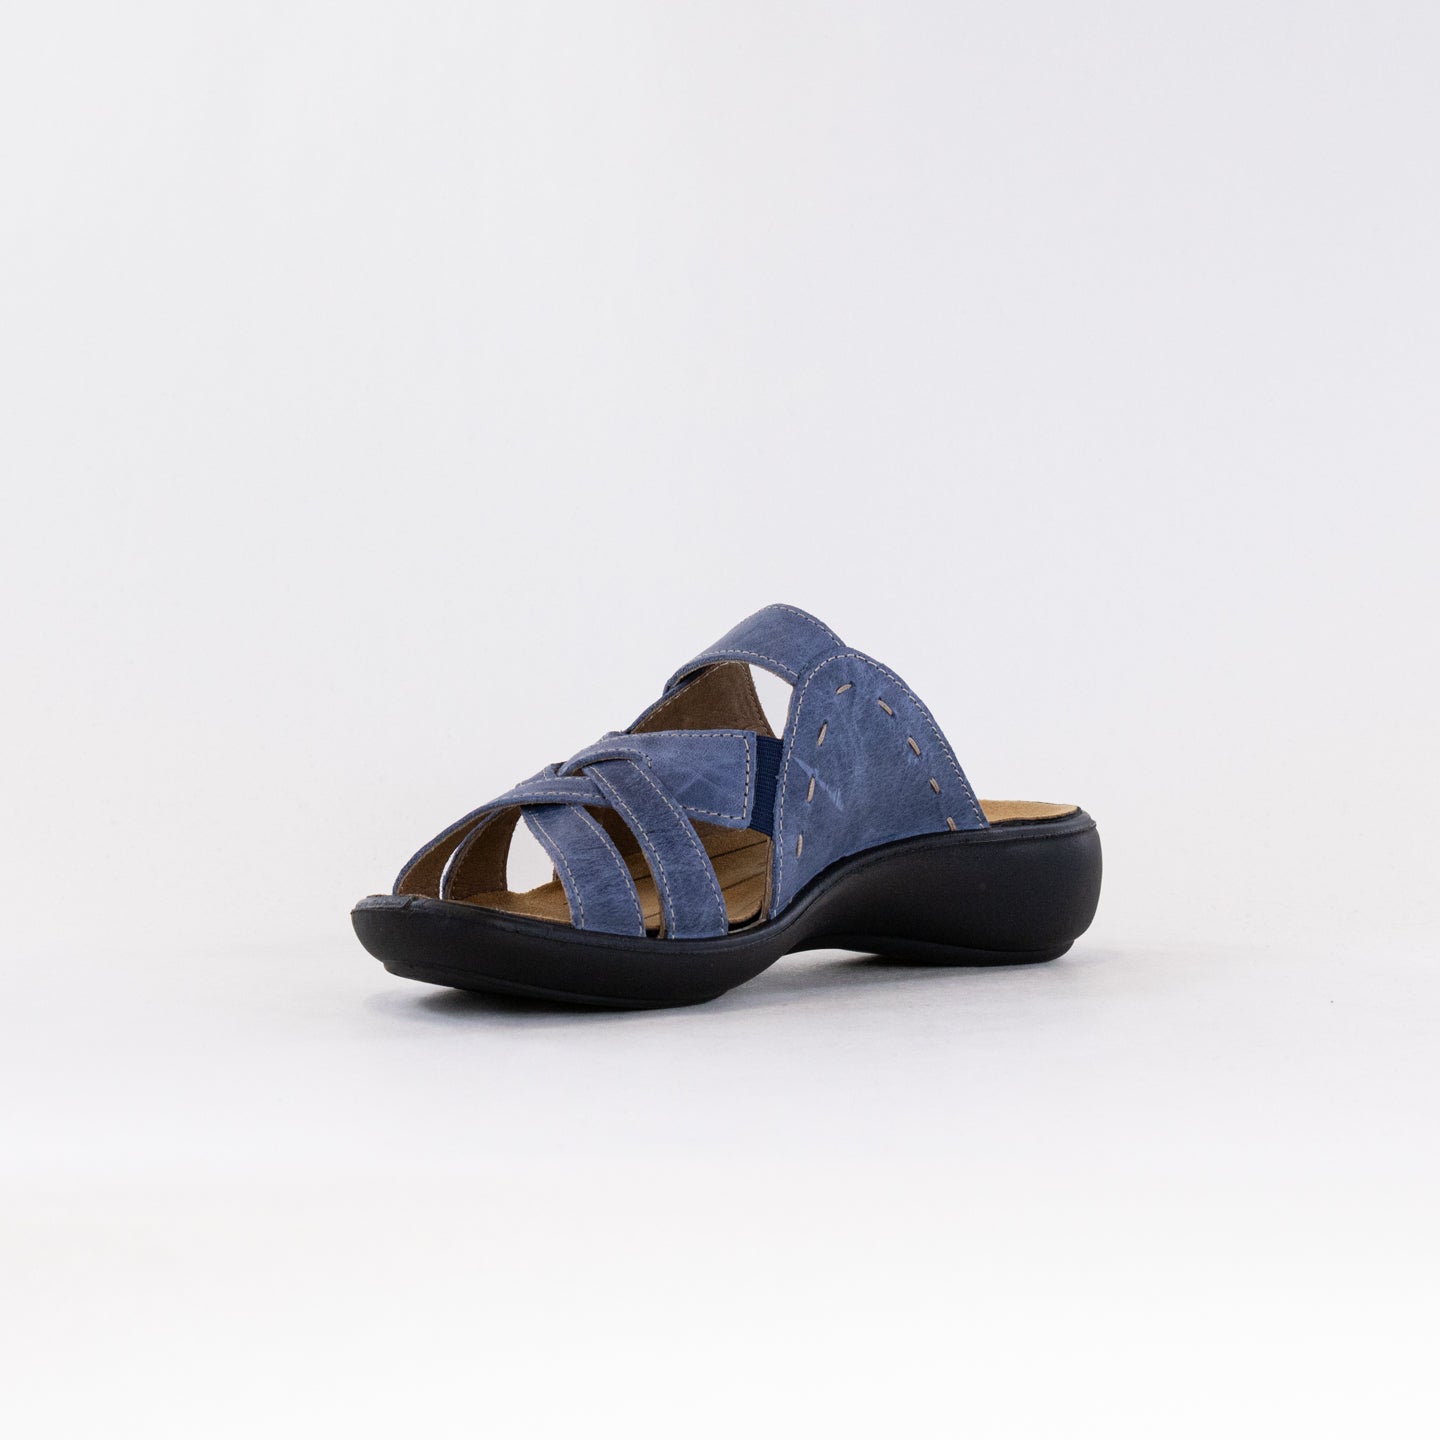 Romika Ibiza 99 Sandal (Women's) - Dark Blue